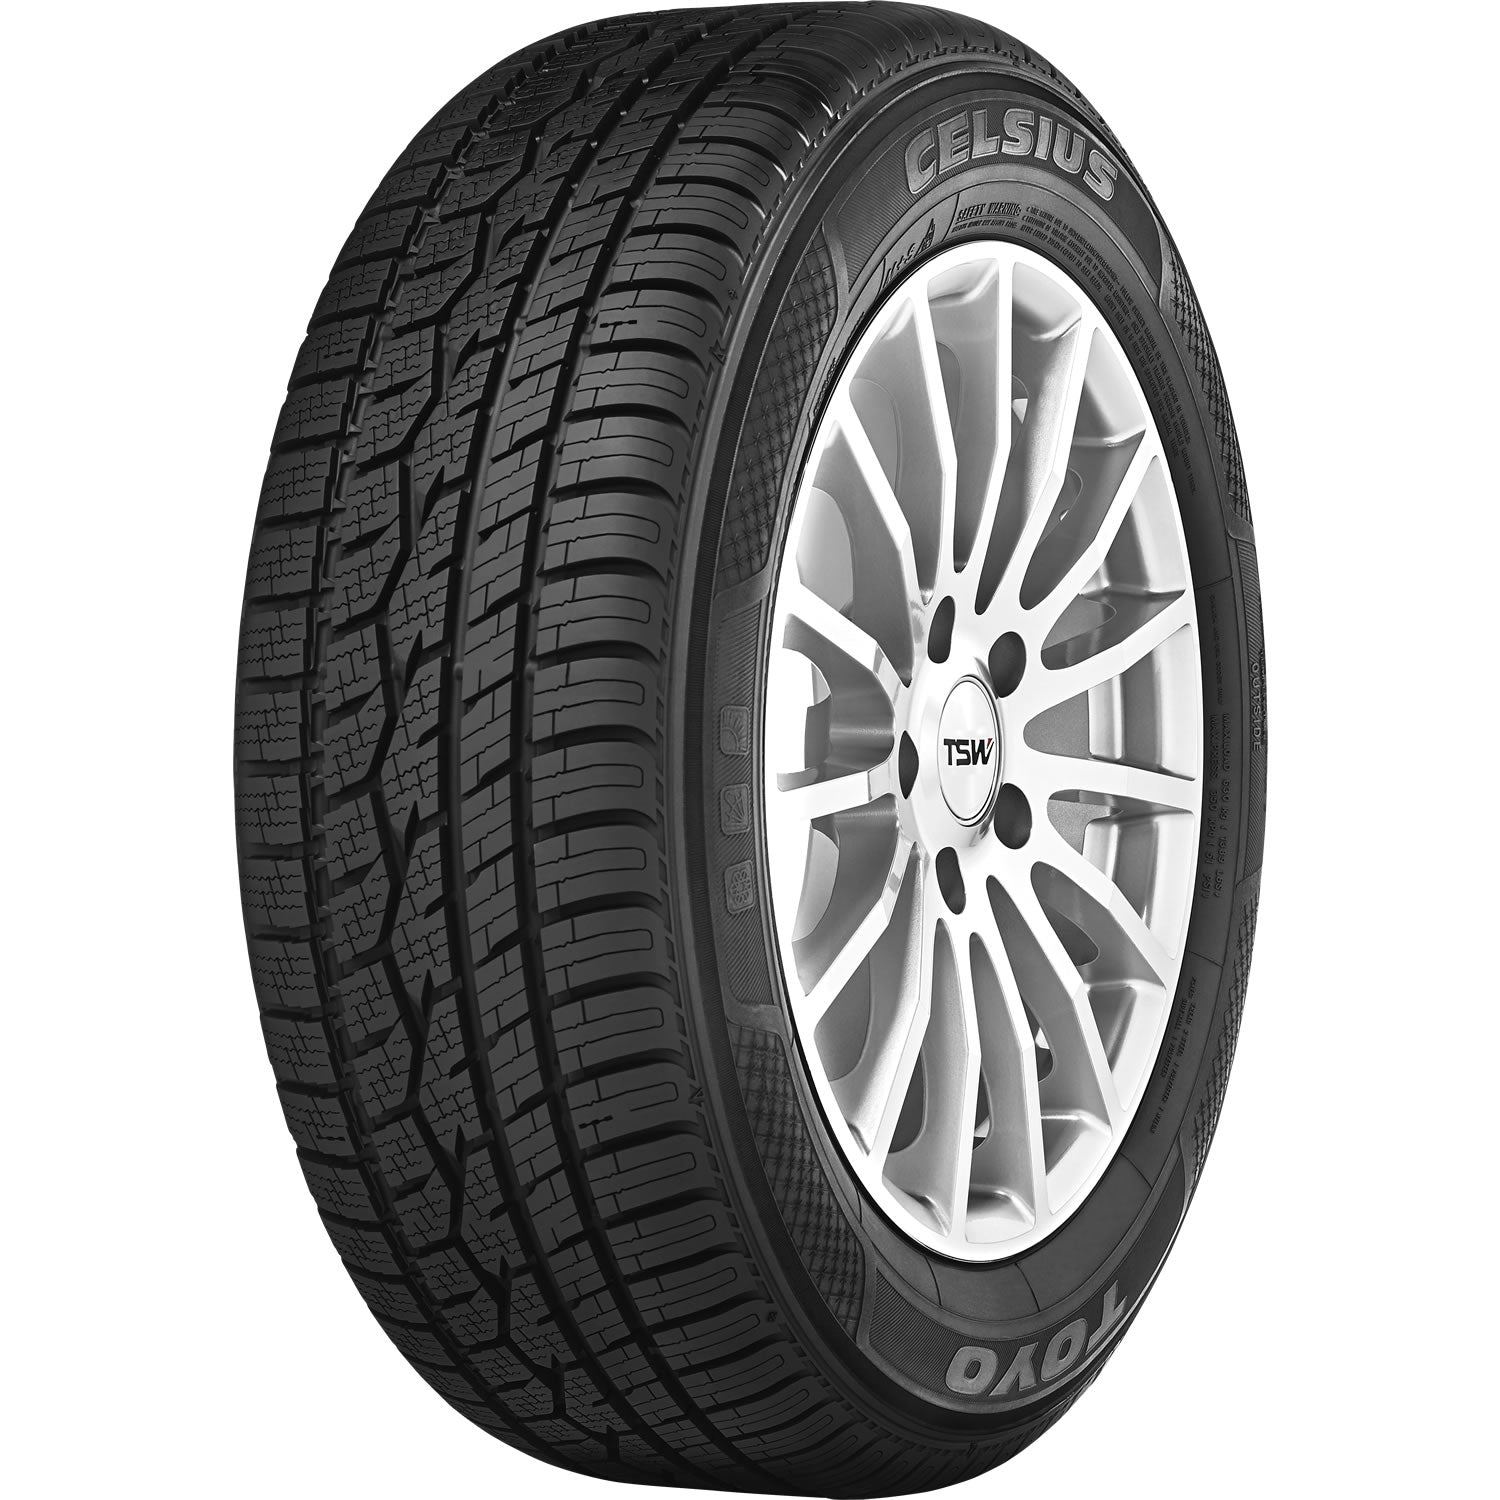 TOYO TIRES CELSIUS 225/45R18 (25.9X8.9R 18) Tires